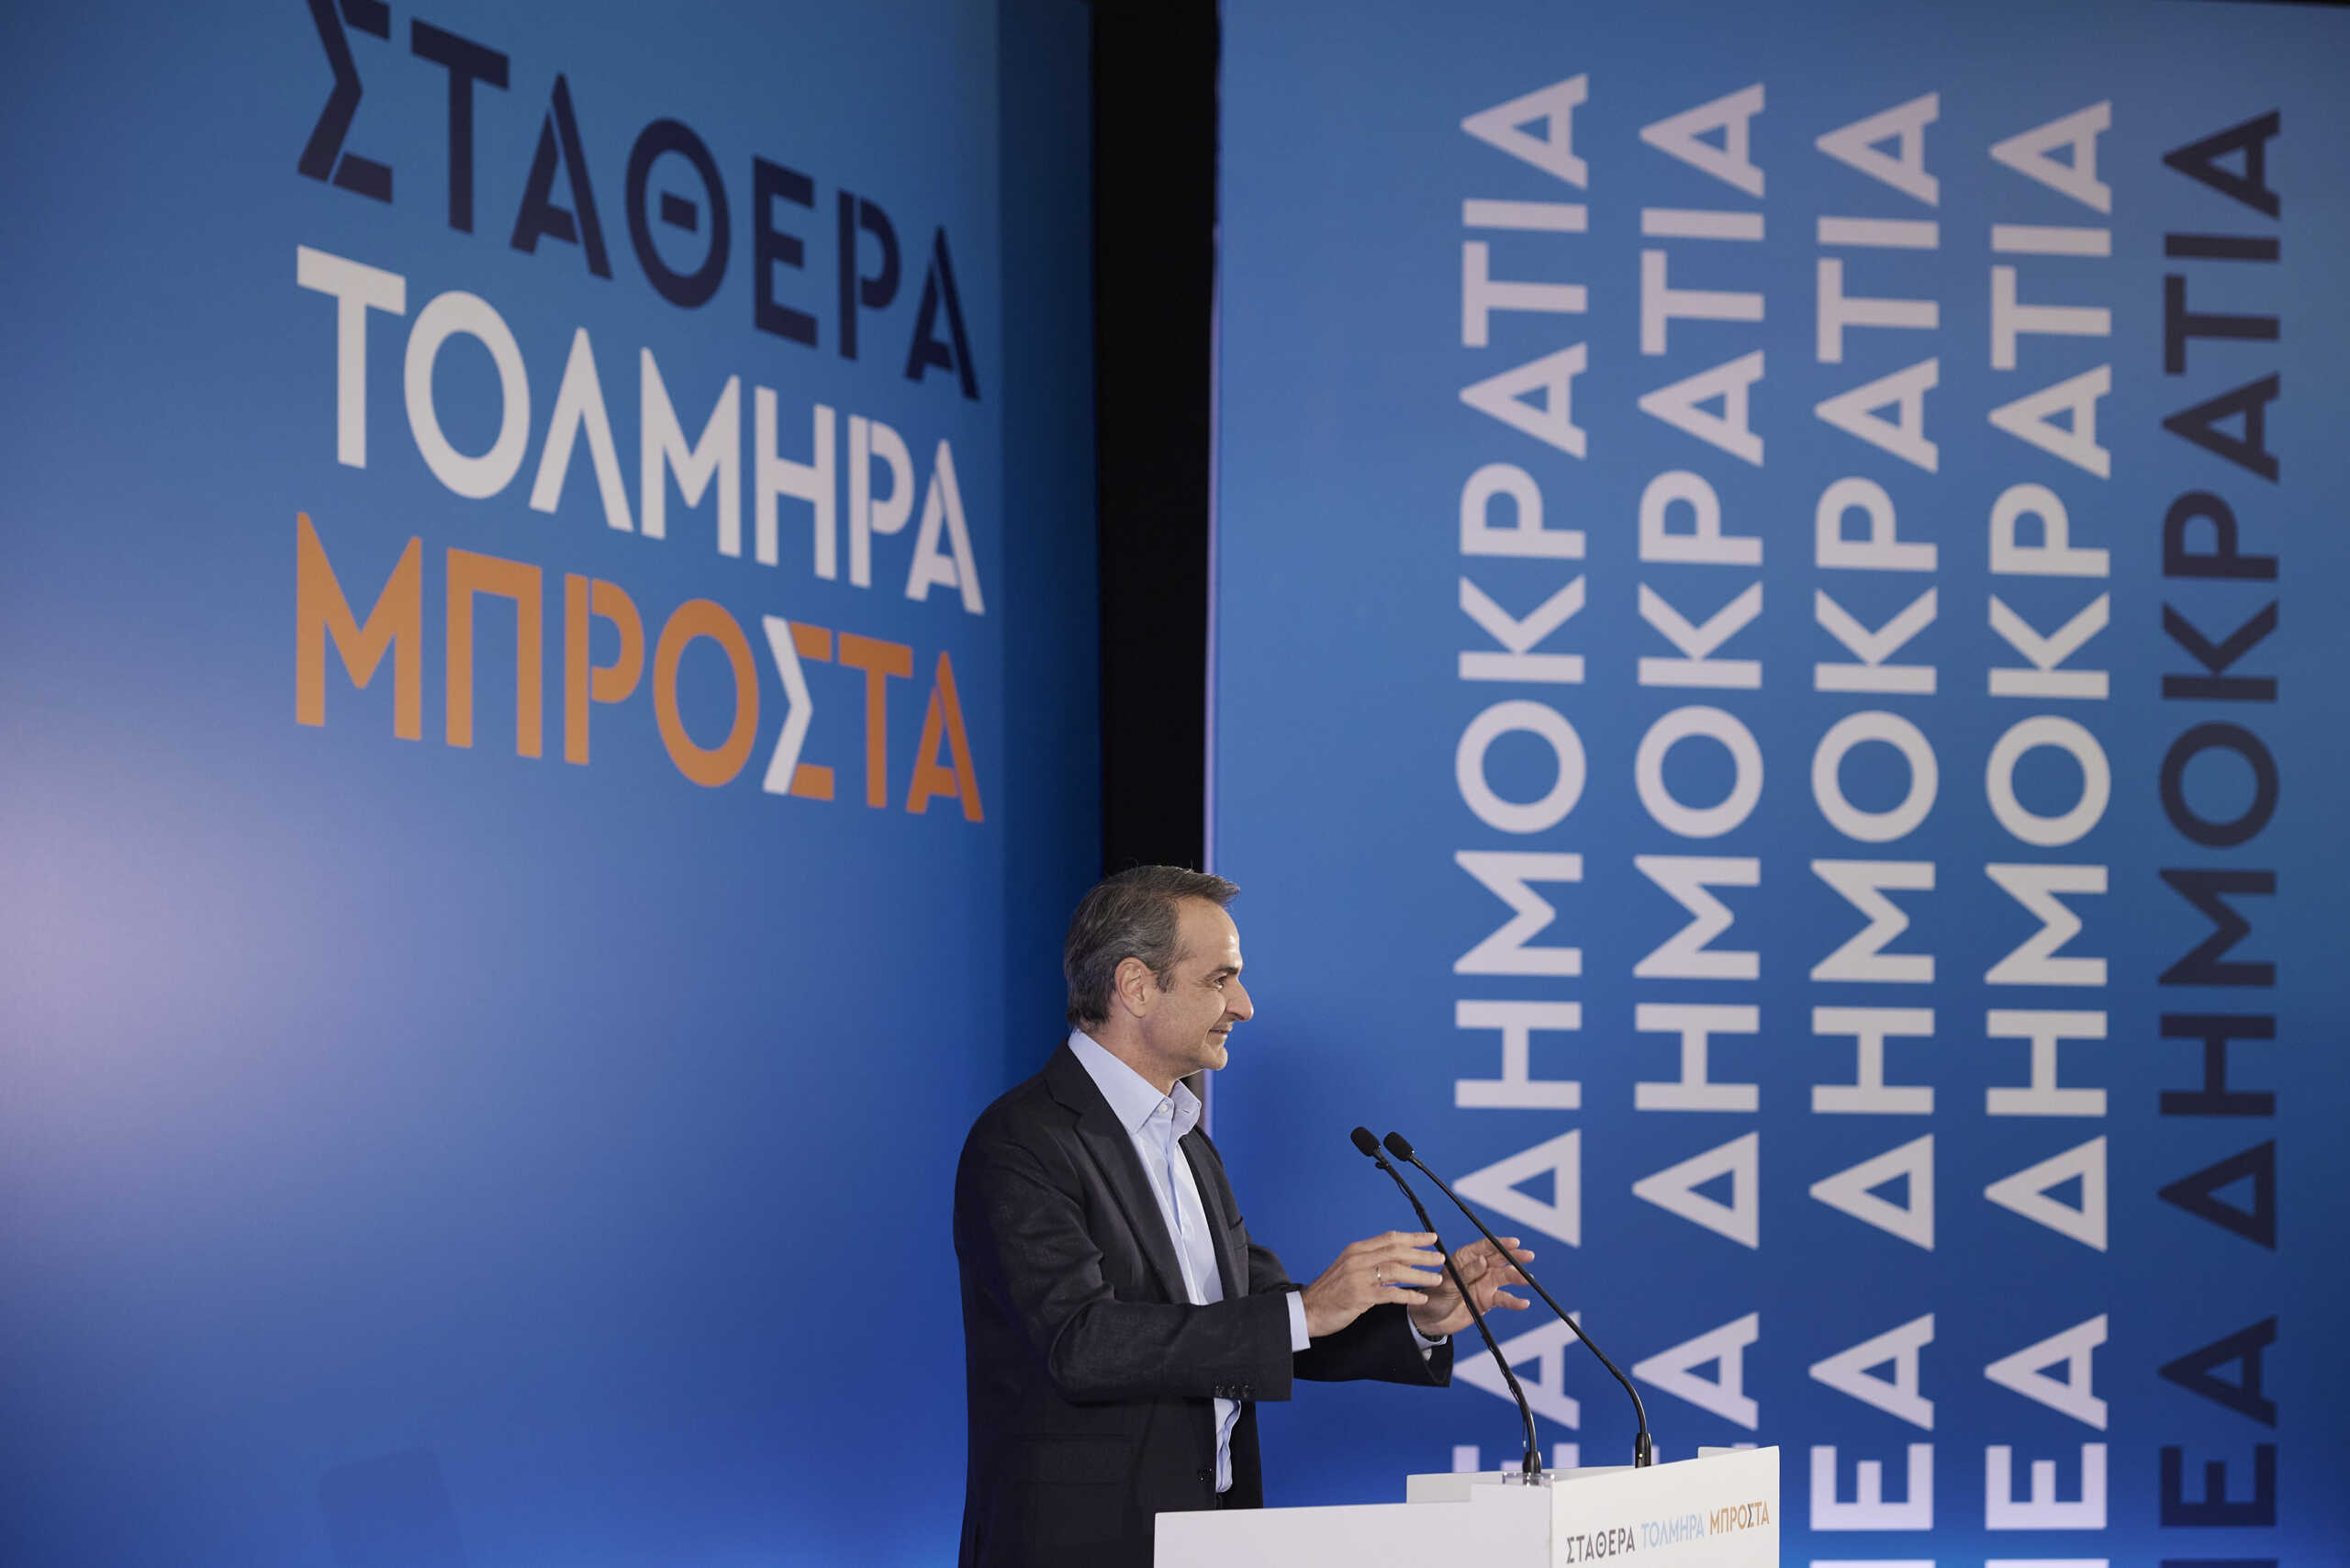 Εκλογές 2023 – Μητσοτάκης από την Πάτρα: Στην σύγκριση προγραμμάτων και συνέπειας ο κ. Τσίπρας δίνει λευκή κόλλα